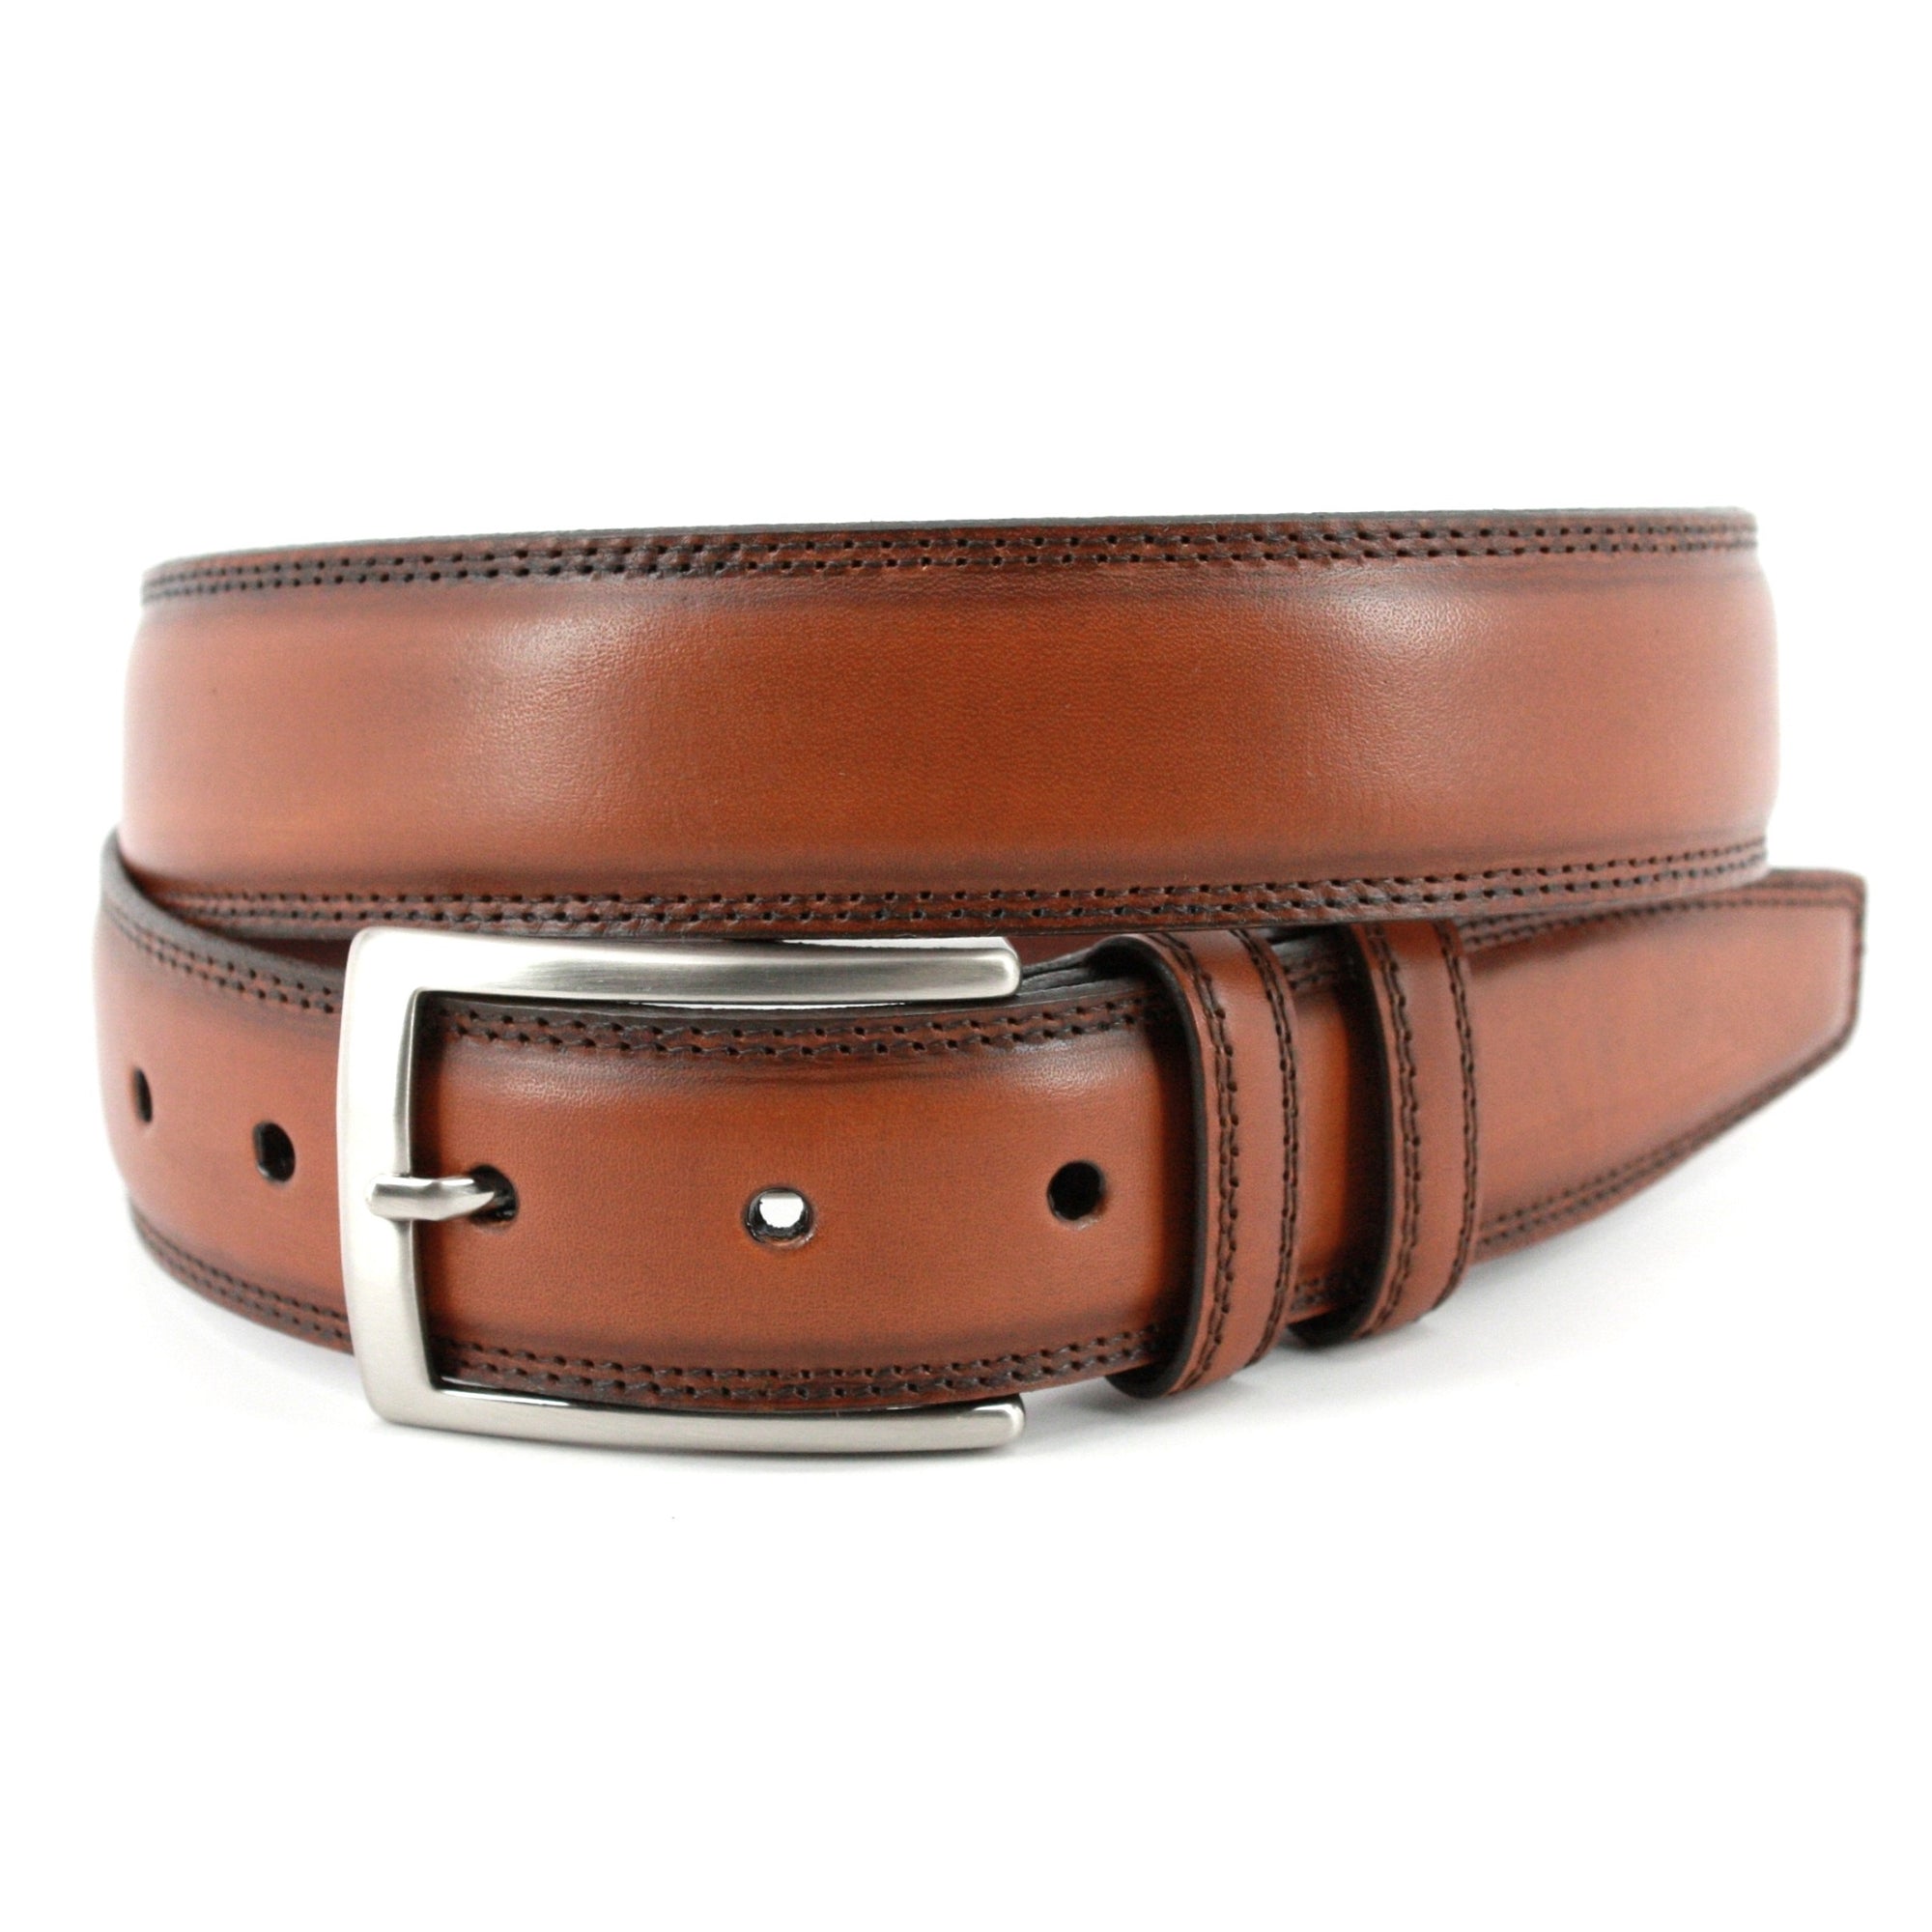 Hand Stained Italian Kipskin Belt in Walnut by Torino Leather